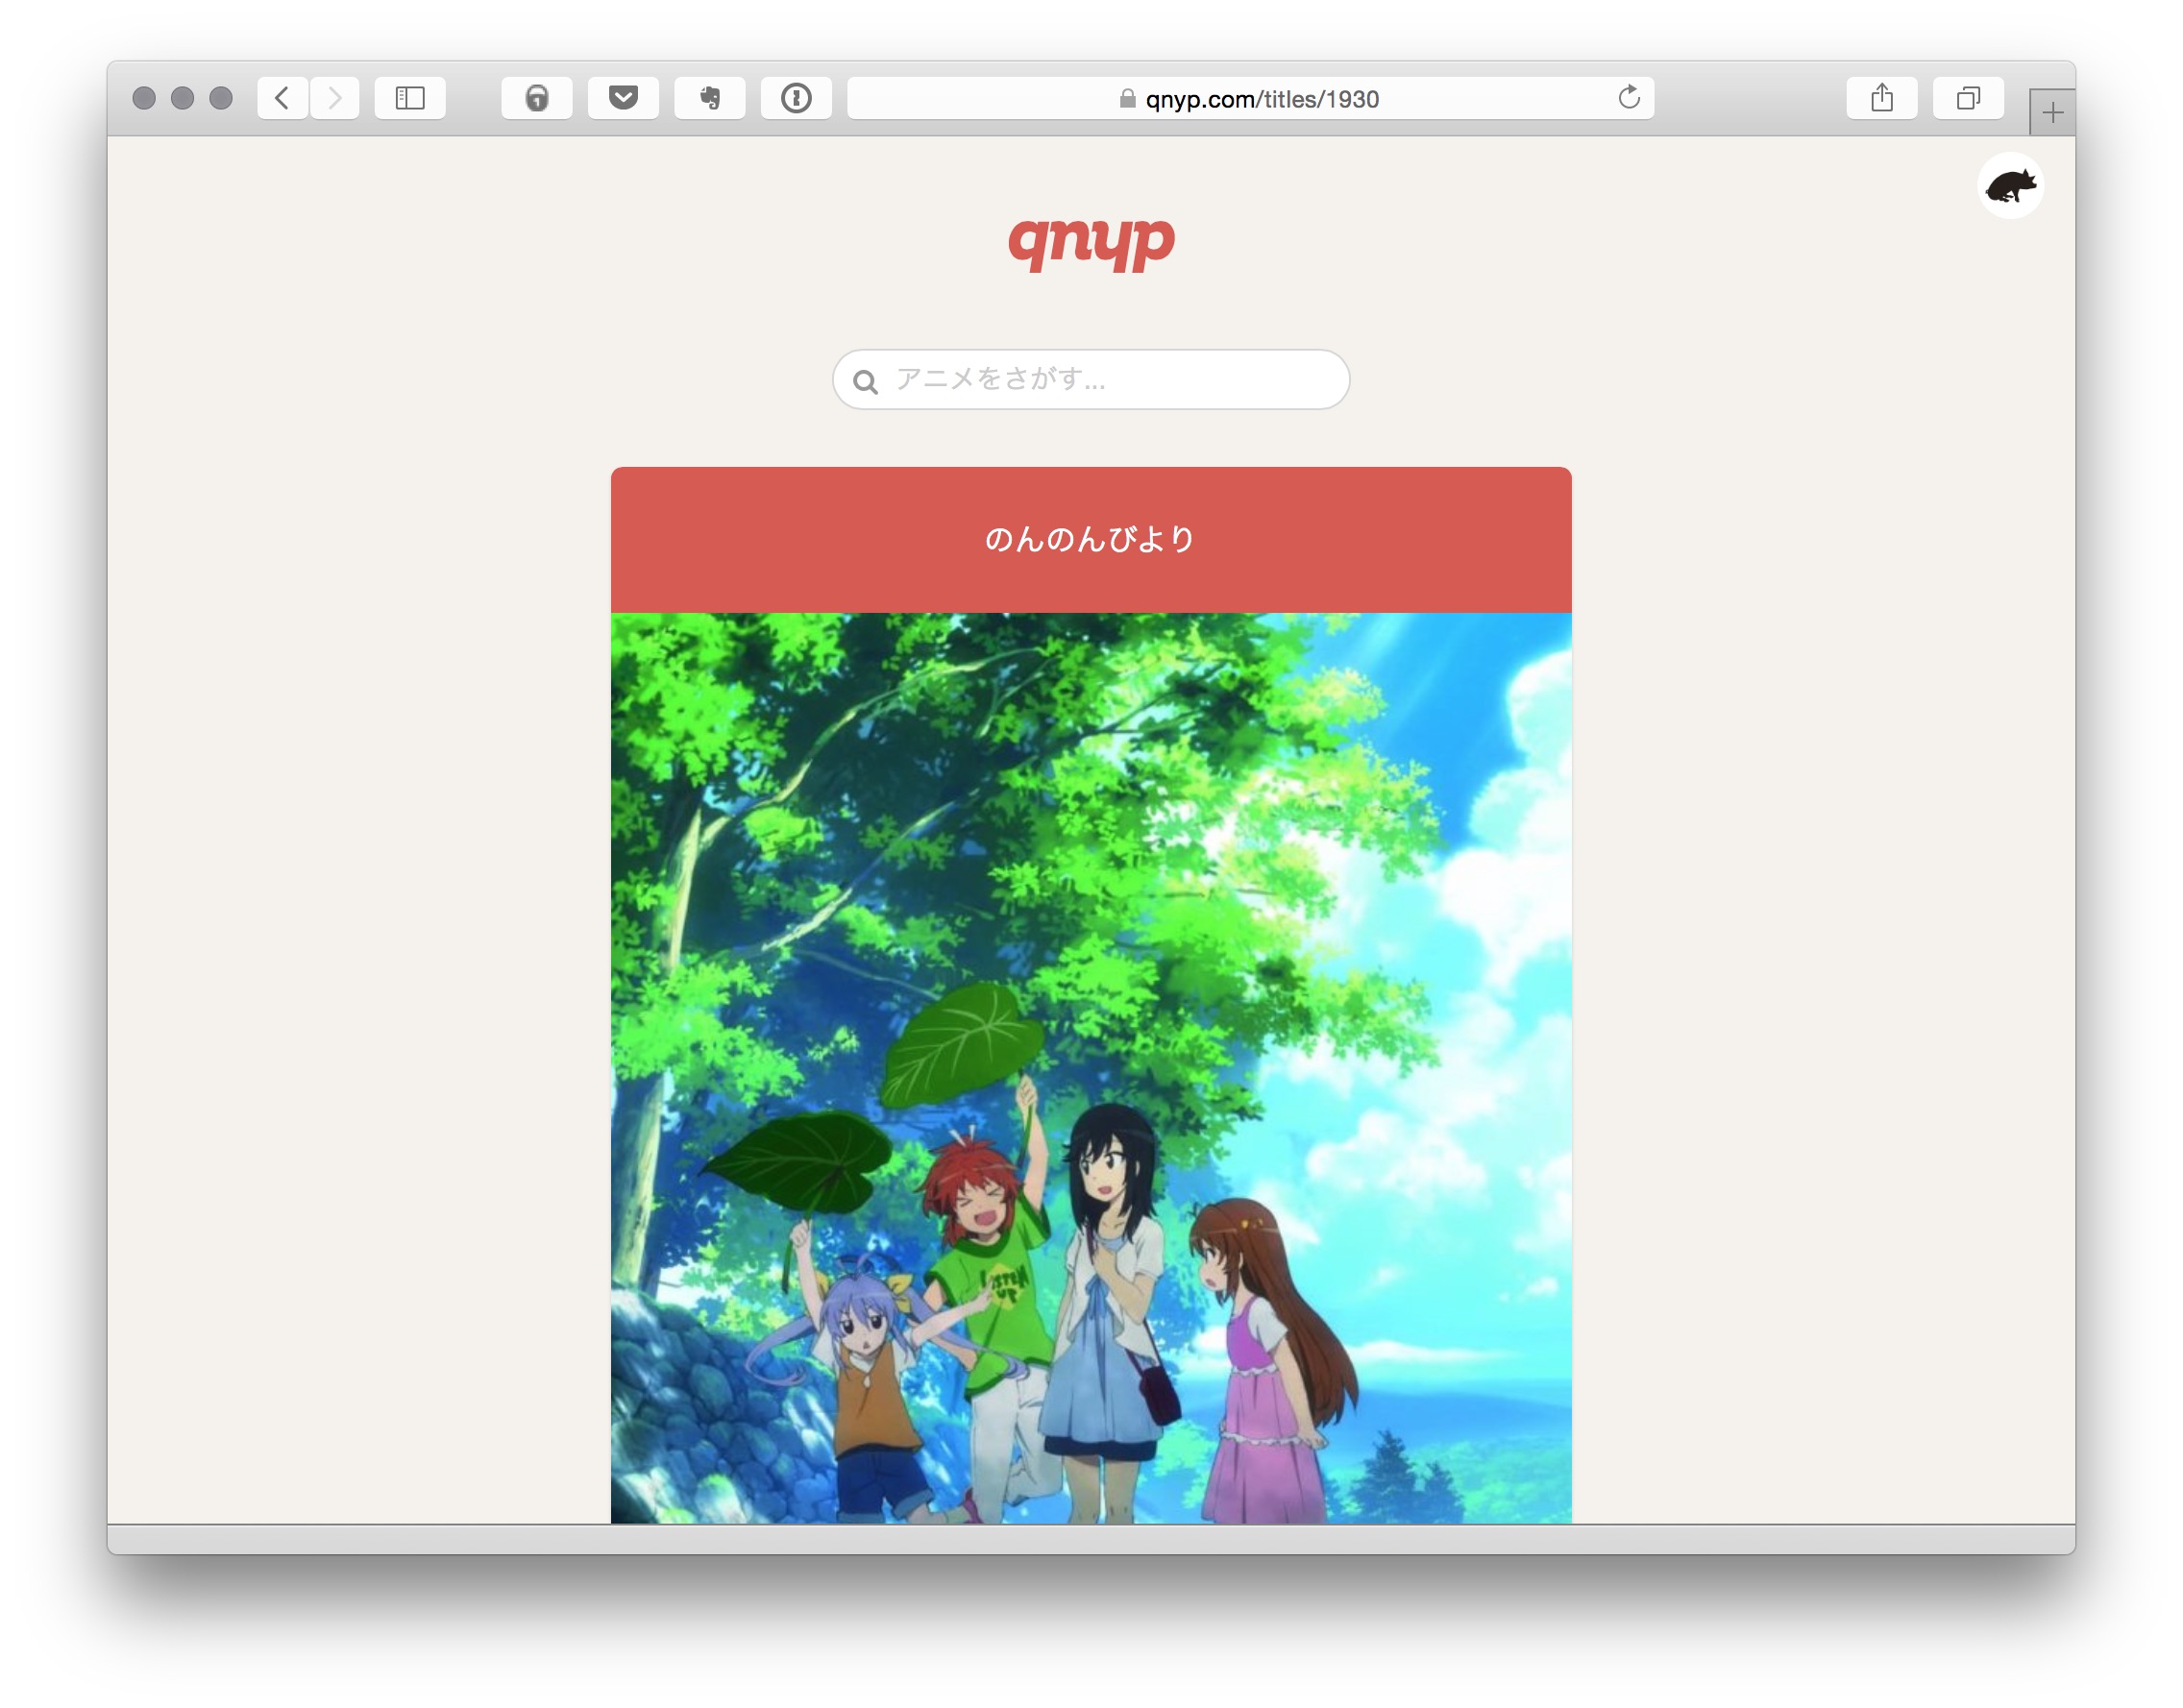 qnyp.comのスクリーンショット